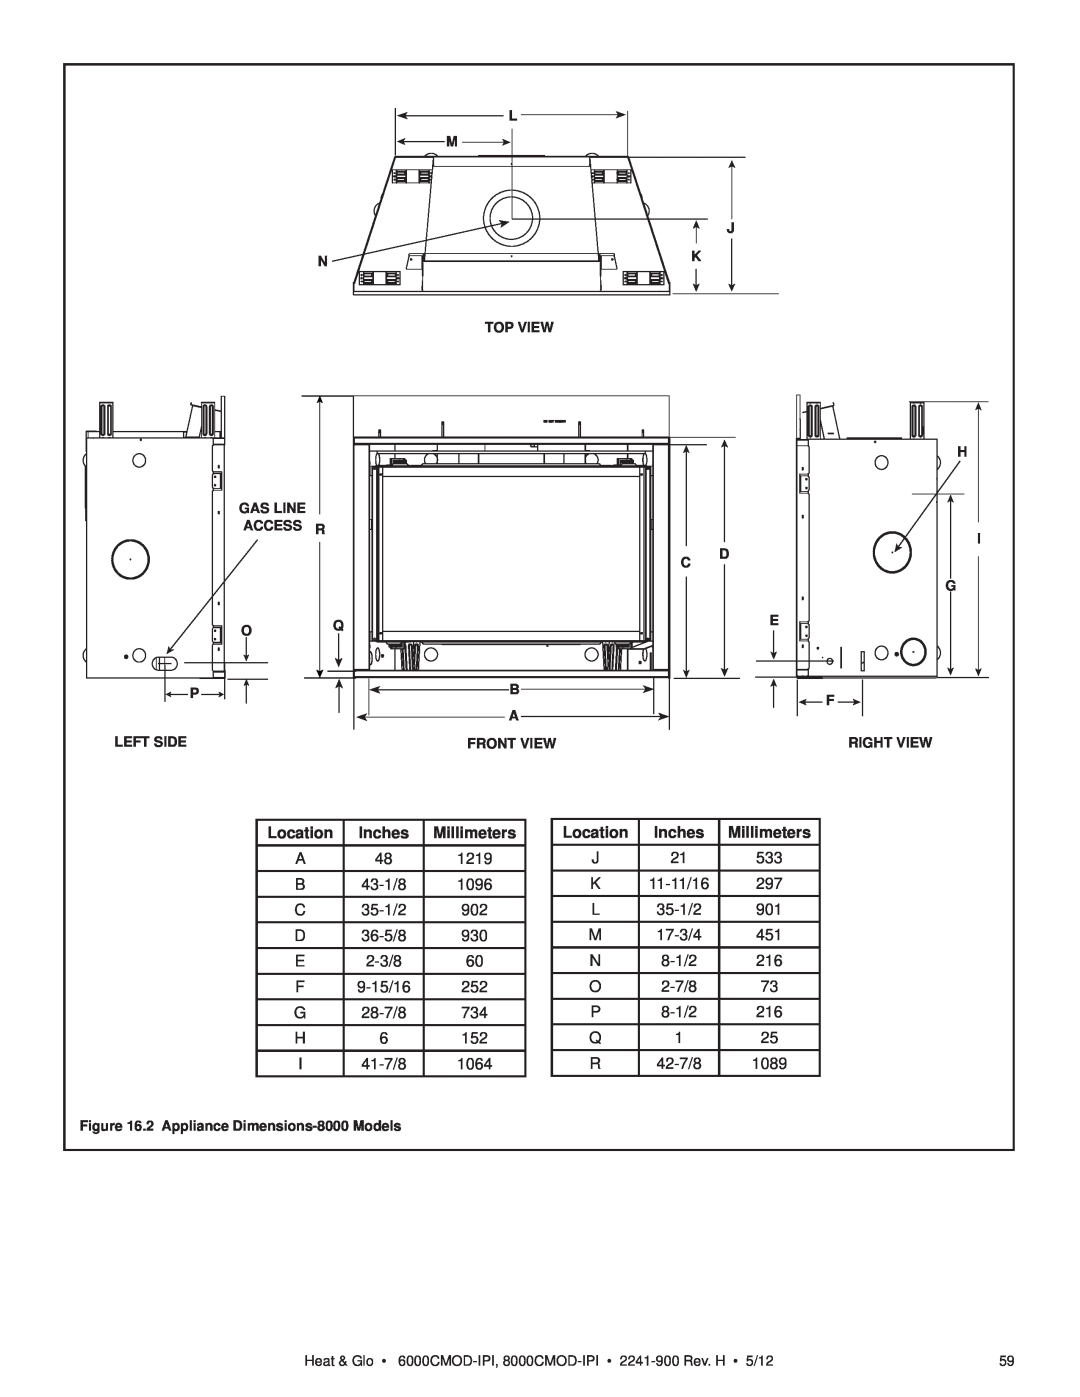 Heat & Glo LifeStyle 6000CMOD-IPI, 8000CMOD-IPI owner manual Location, Inches, Millimeters 